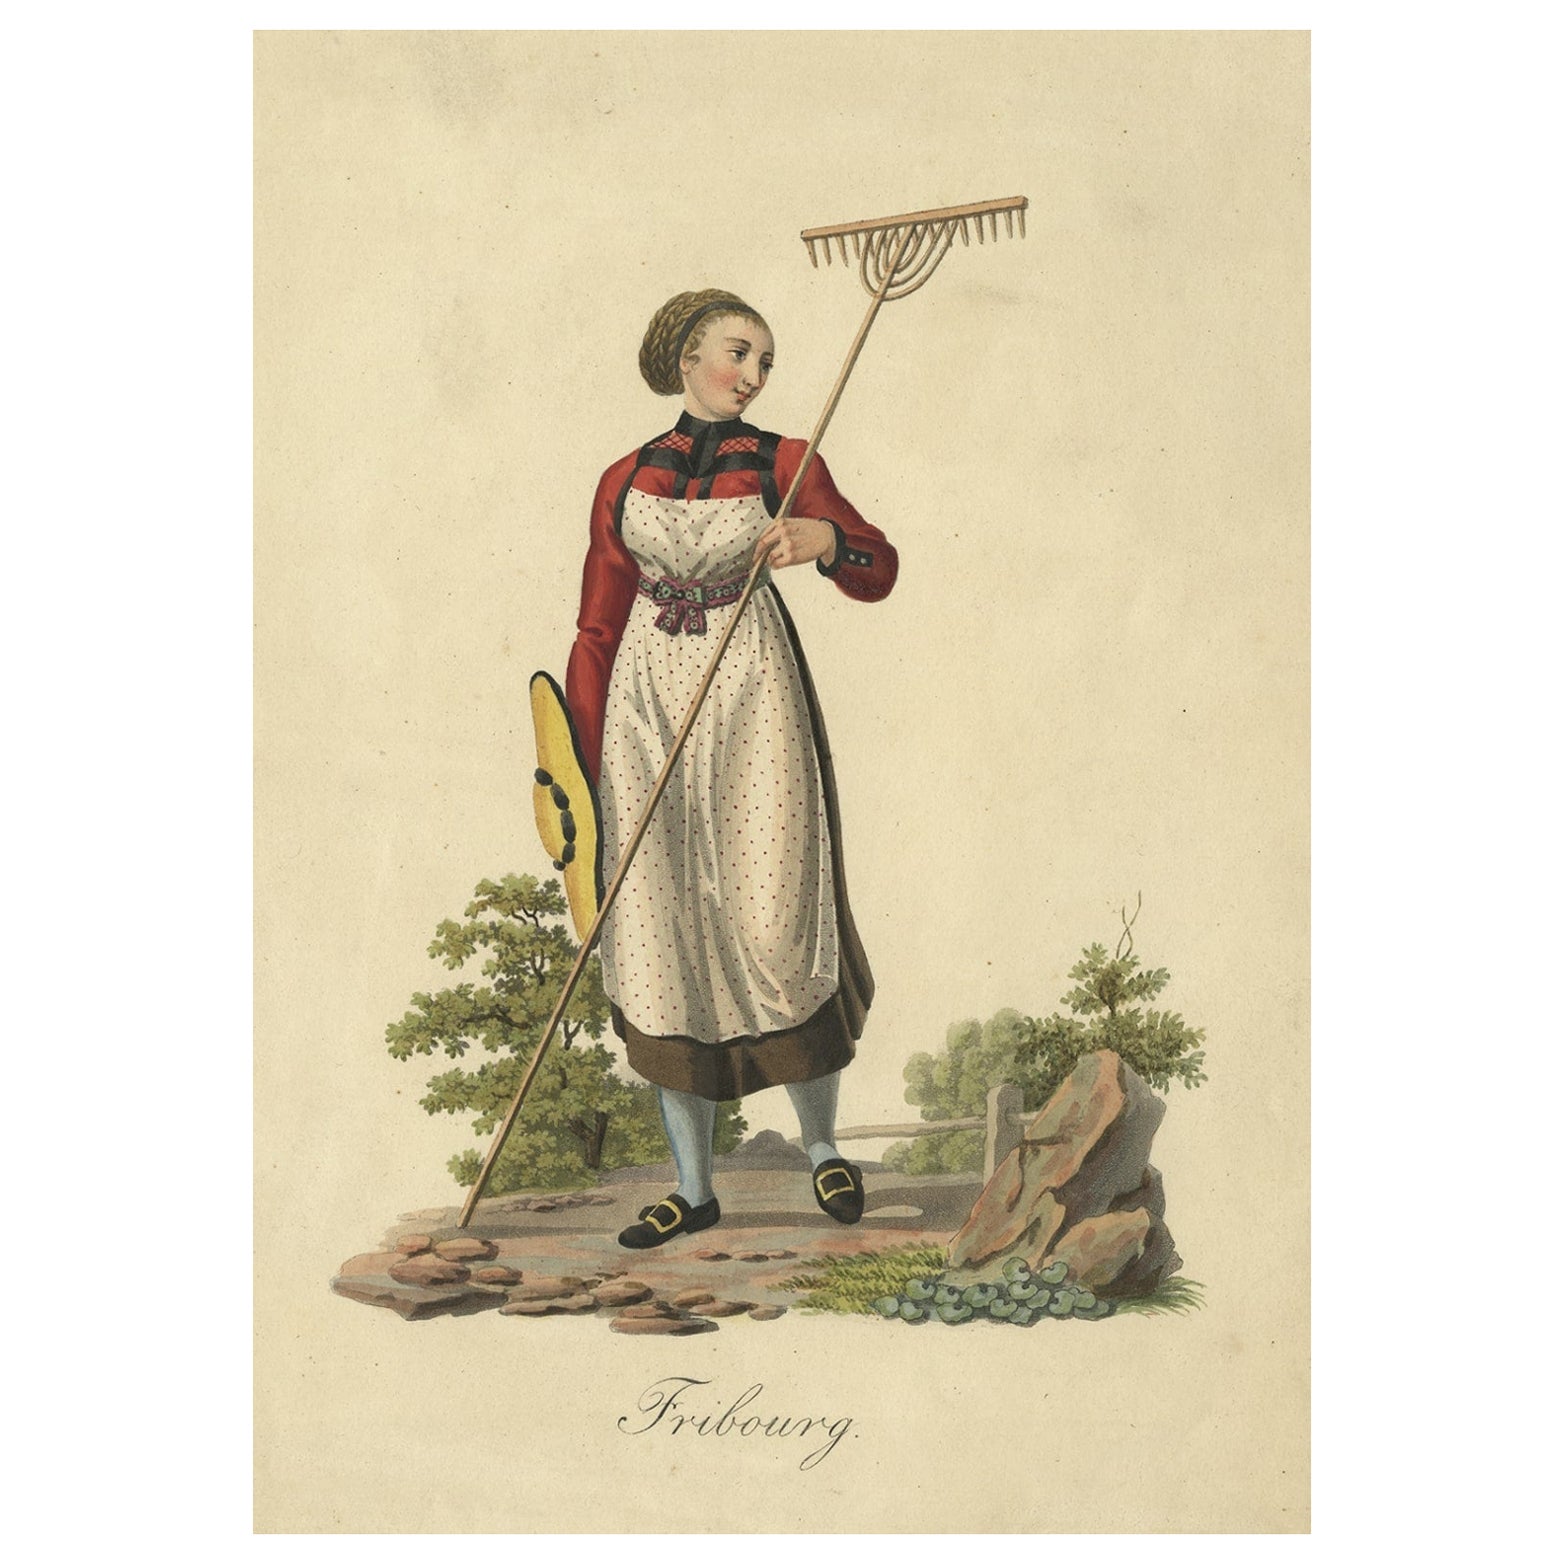 Handkoloriertes Stich einer Bauernfrau aus Fribourg, Schweiz, um 1860